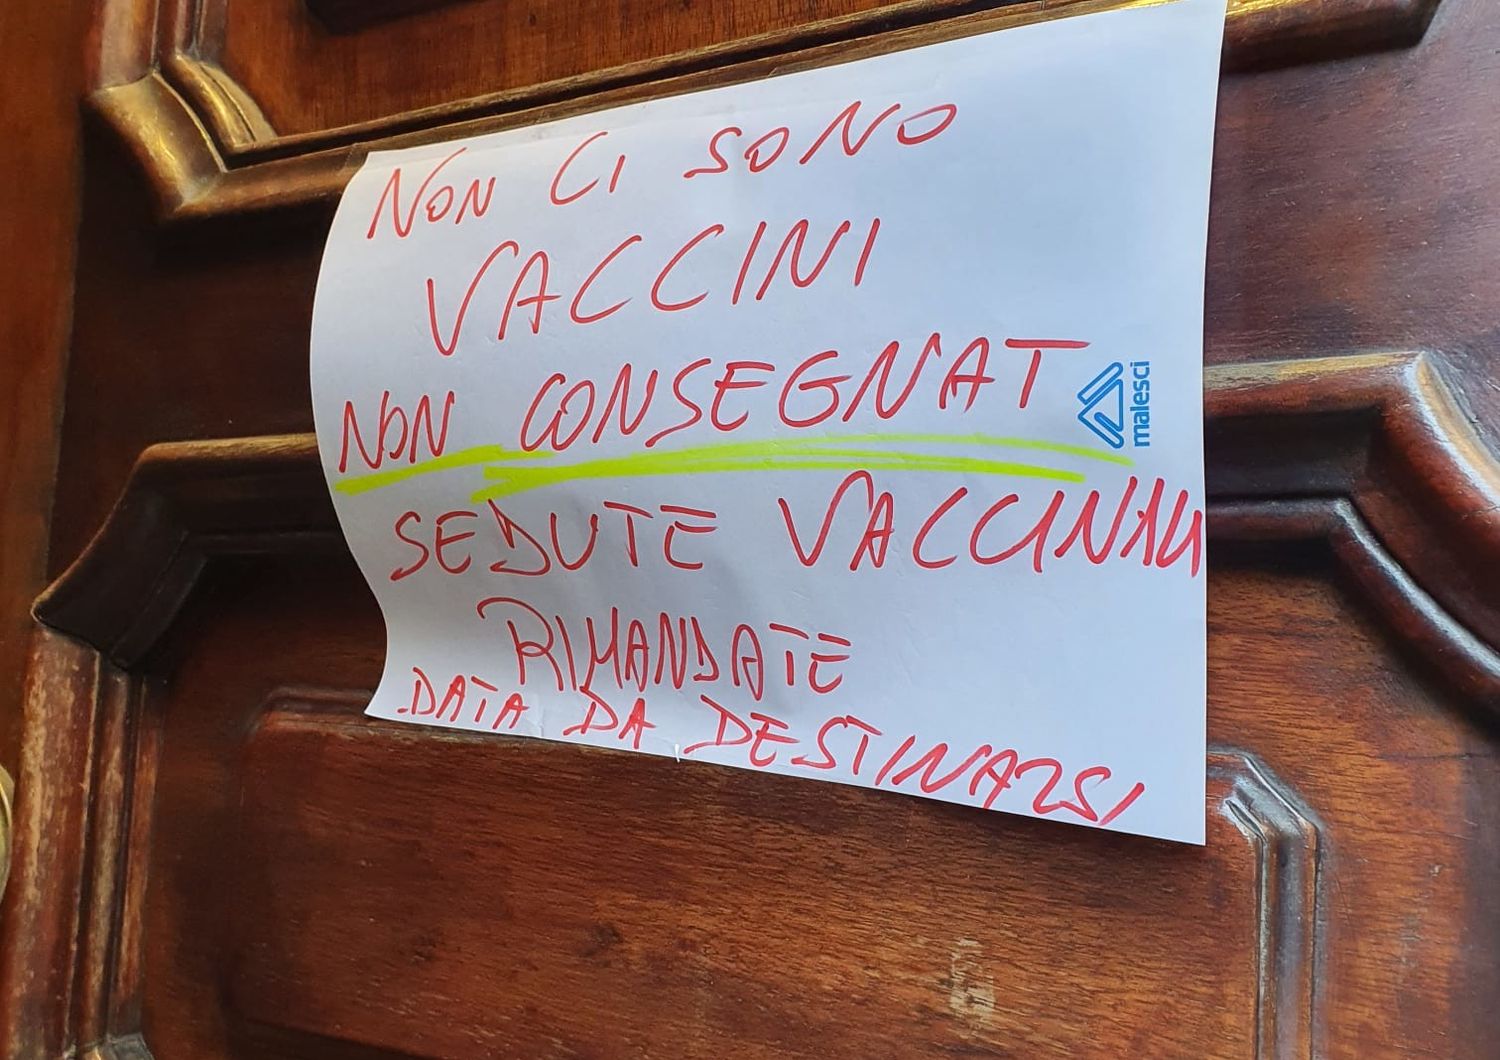 Vaccino influenza, Torino